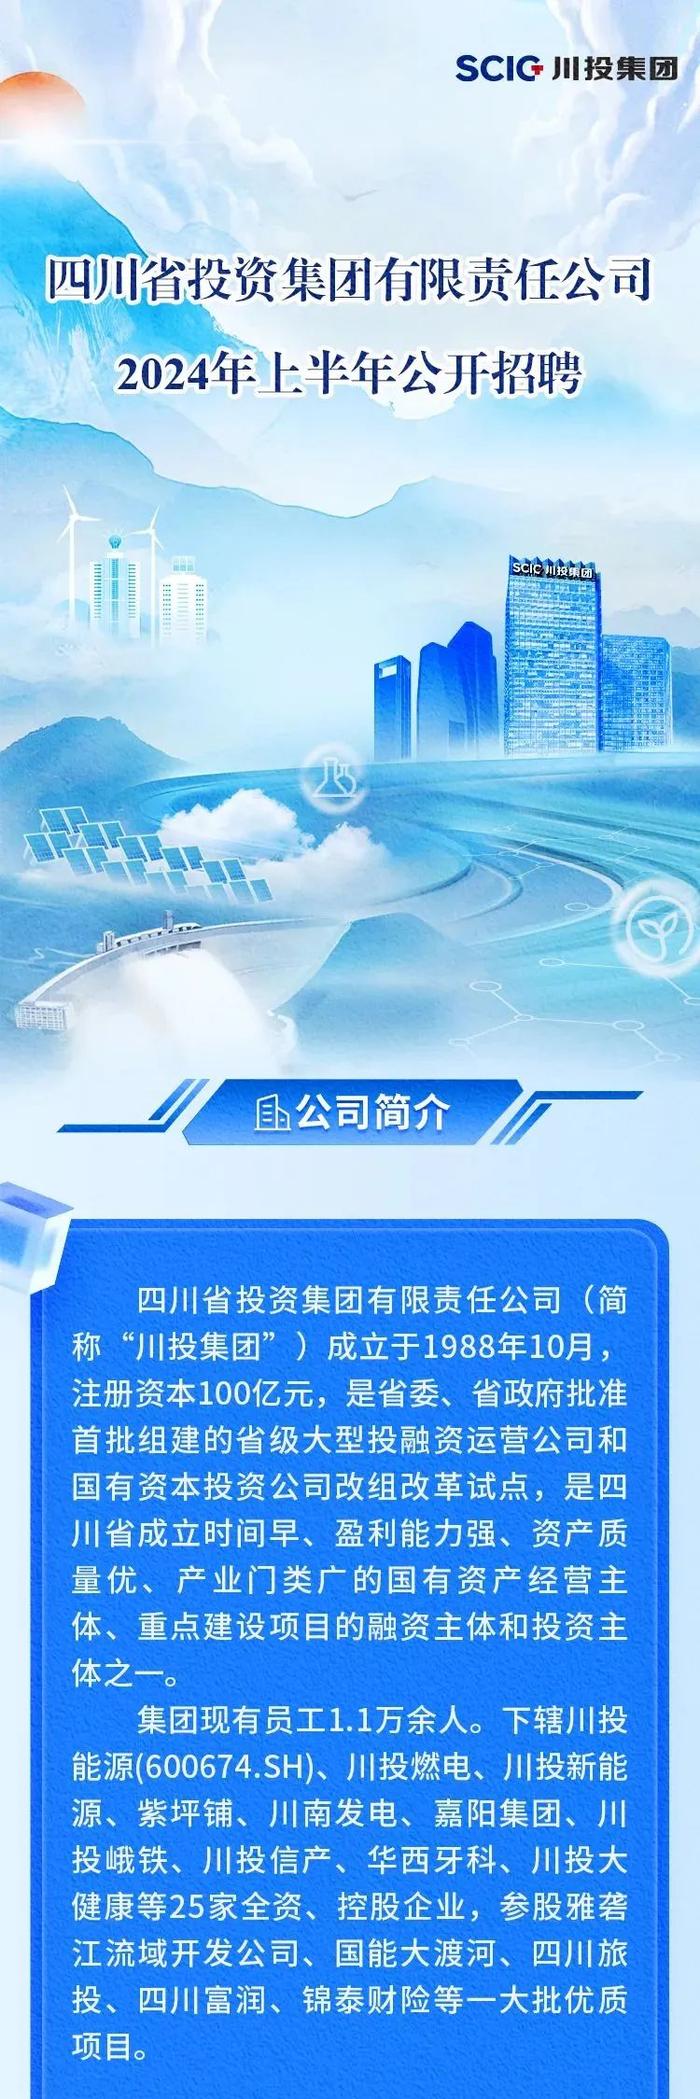 【社招】四川省投资集团有限责任公司2024年上半年公开招聘